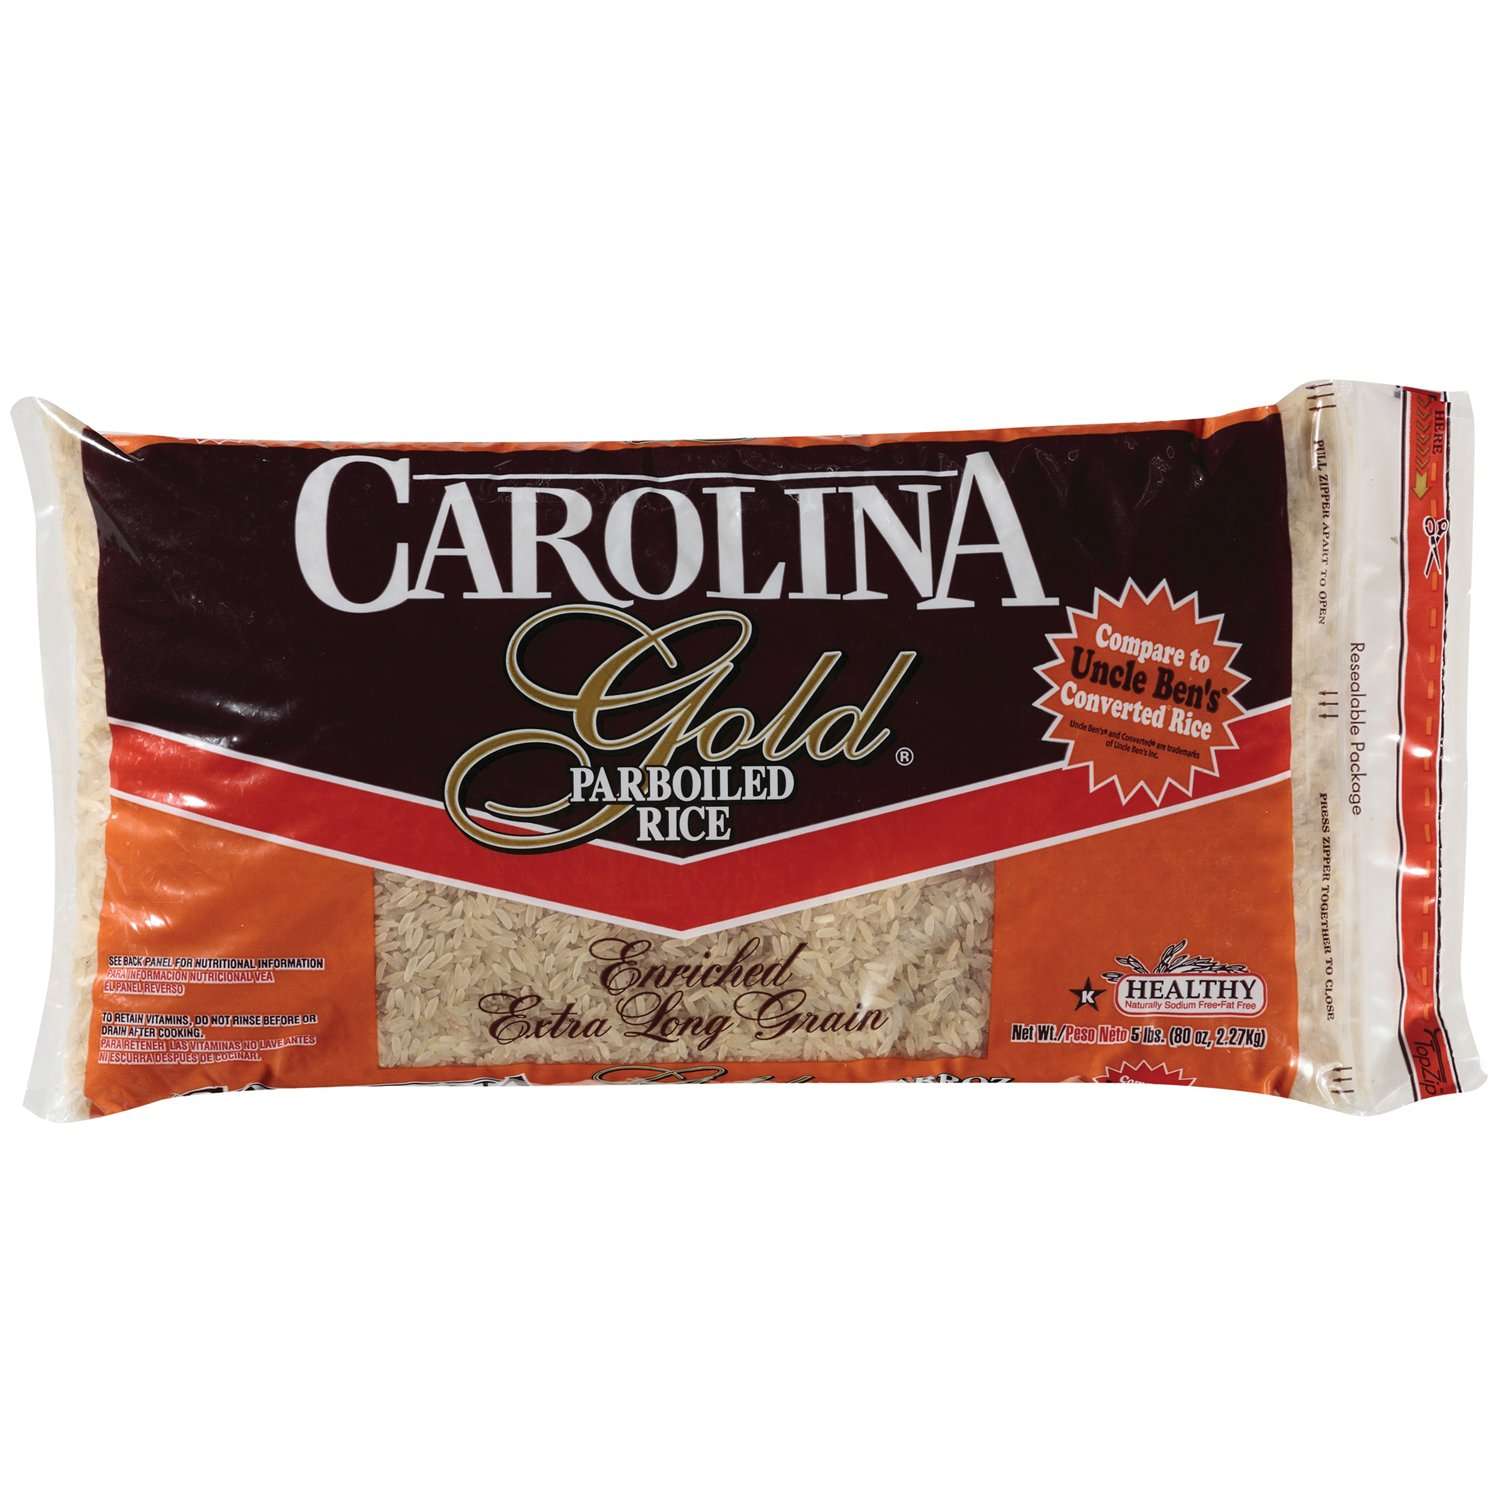 Carolina Gold Parboiled Rice, 5